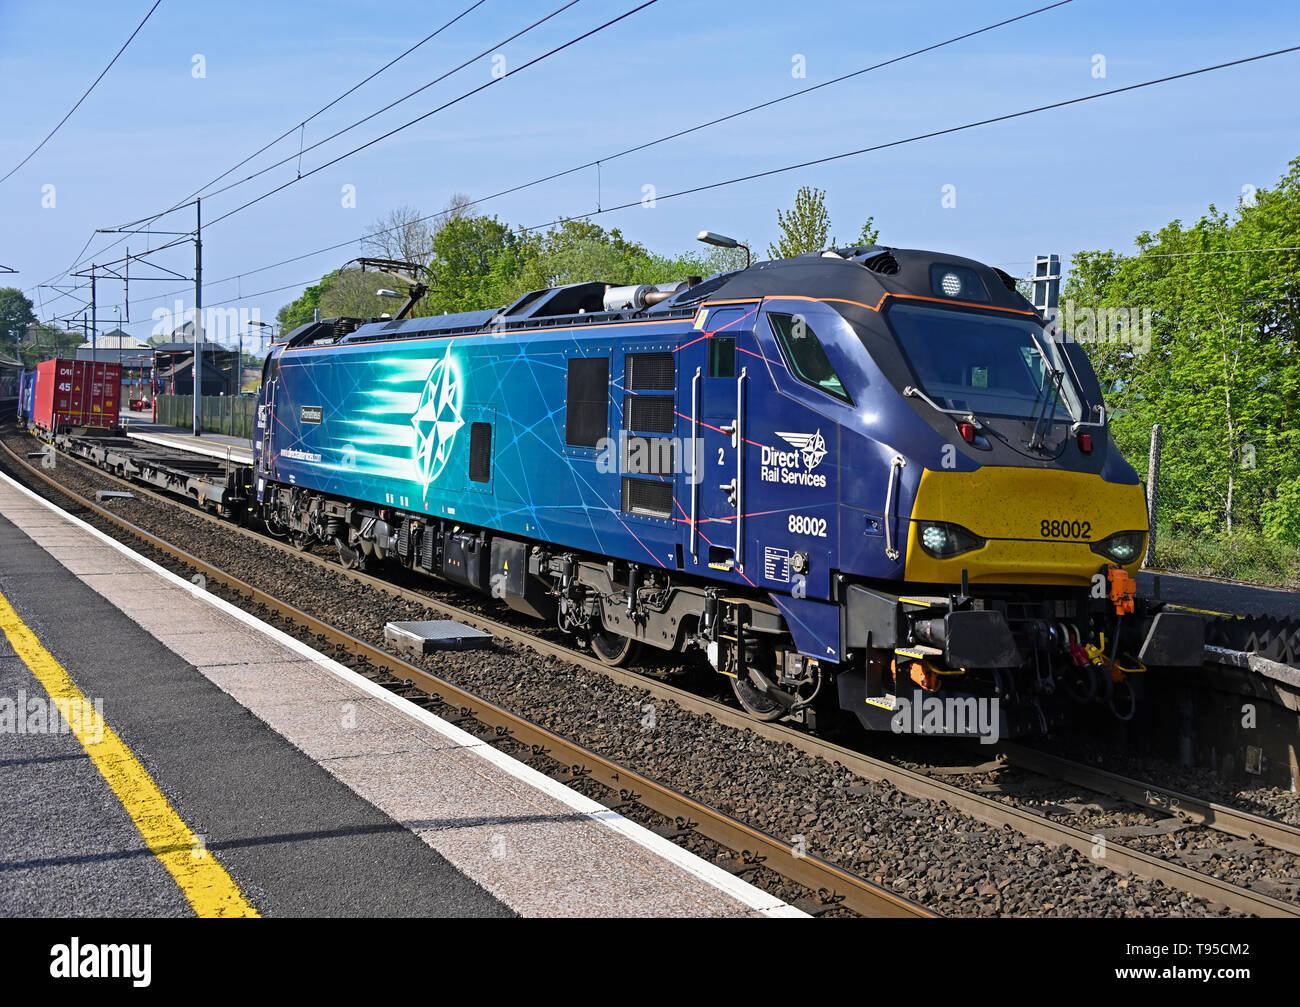 Classe 88 Services ferroviaire direct No88002 locomotive 'Prométhée' transportant les marchandises diverses sur la West Coast Main Line. Oxenholme, Cumbria, Angleterre, Royaume-Uni Banque D'Images